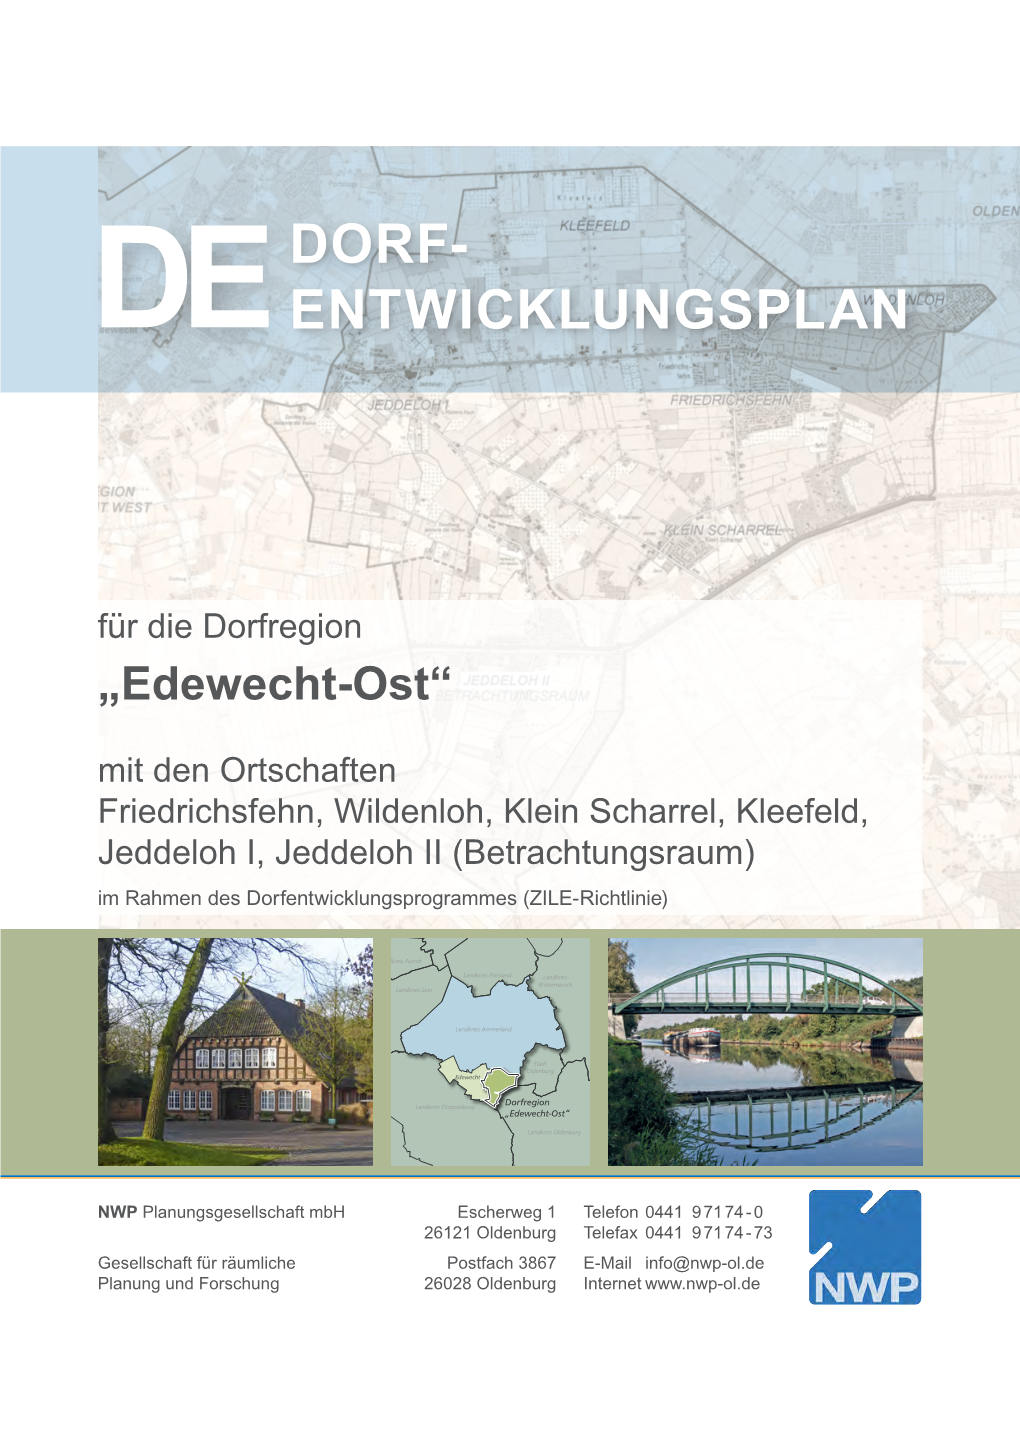 Dedorf- Entwicklungsplan